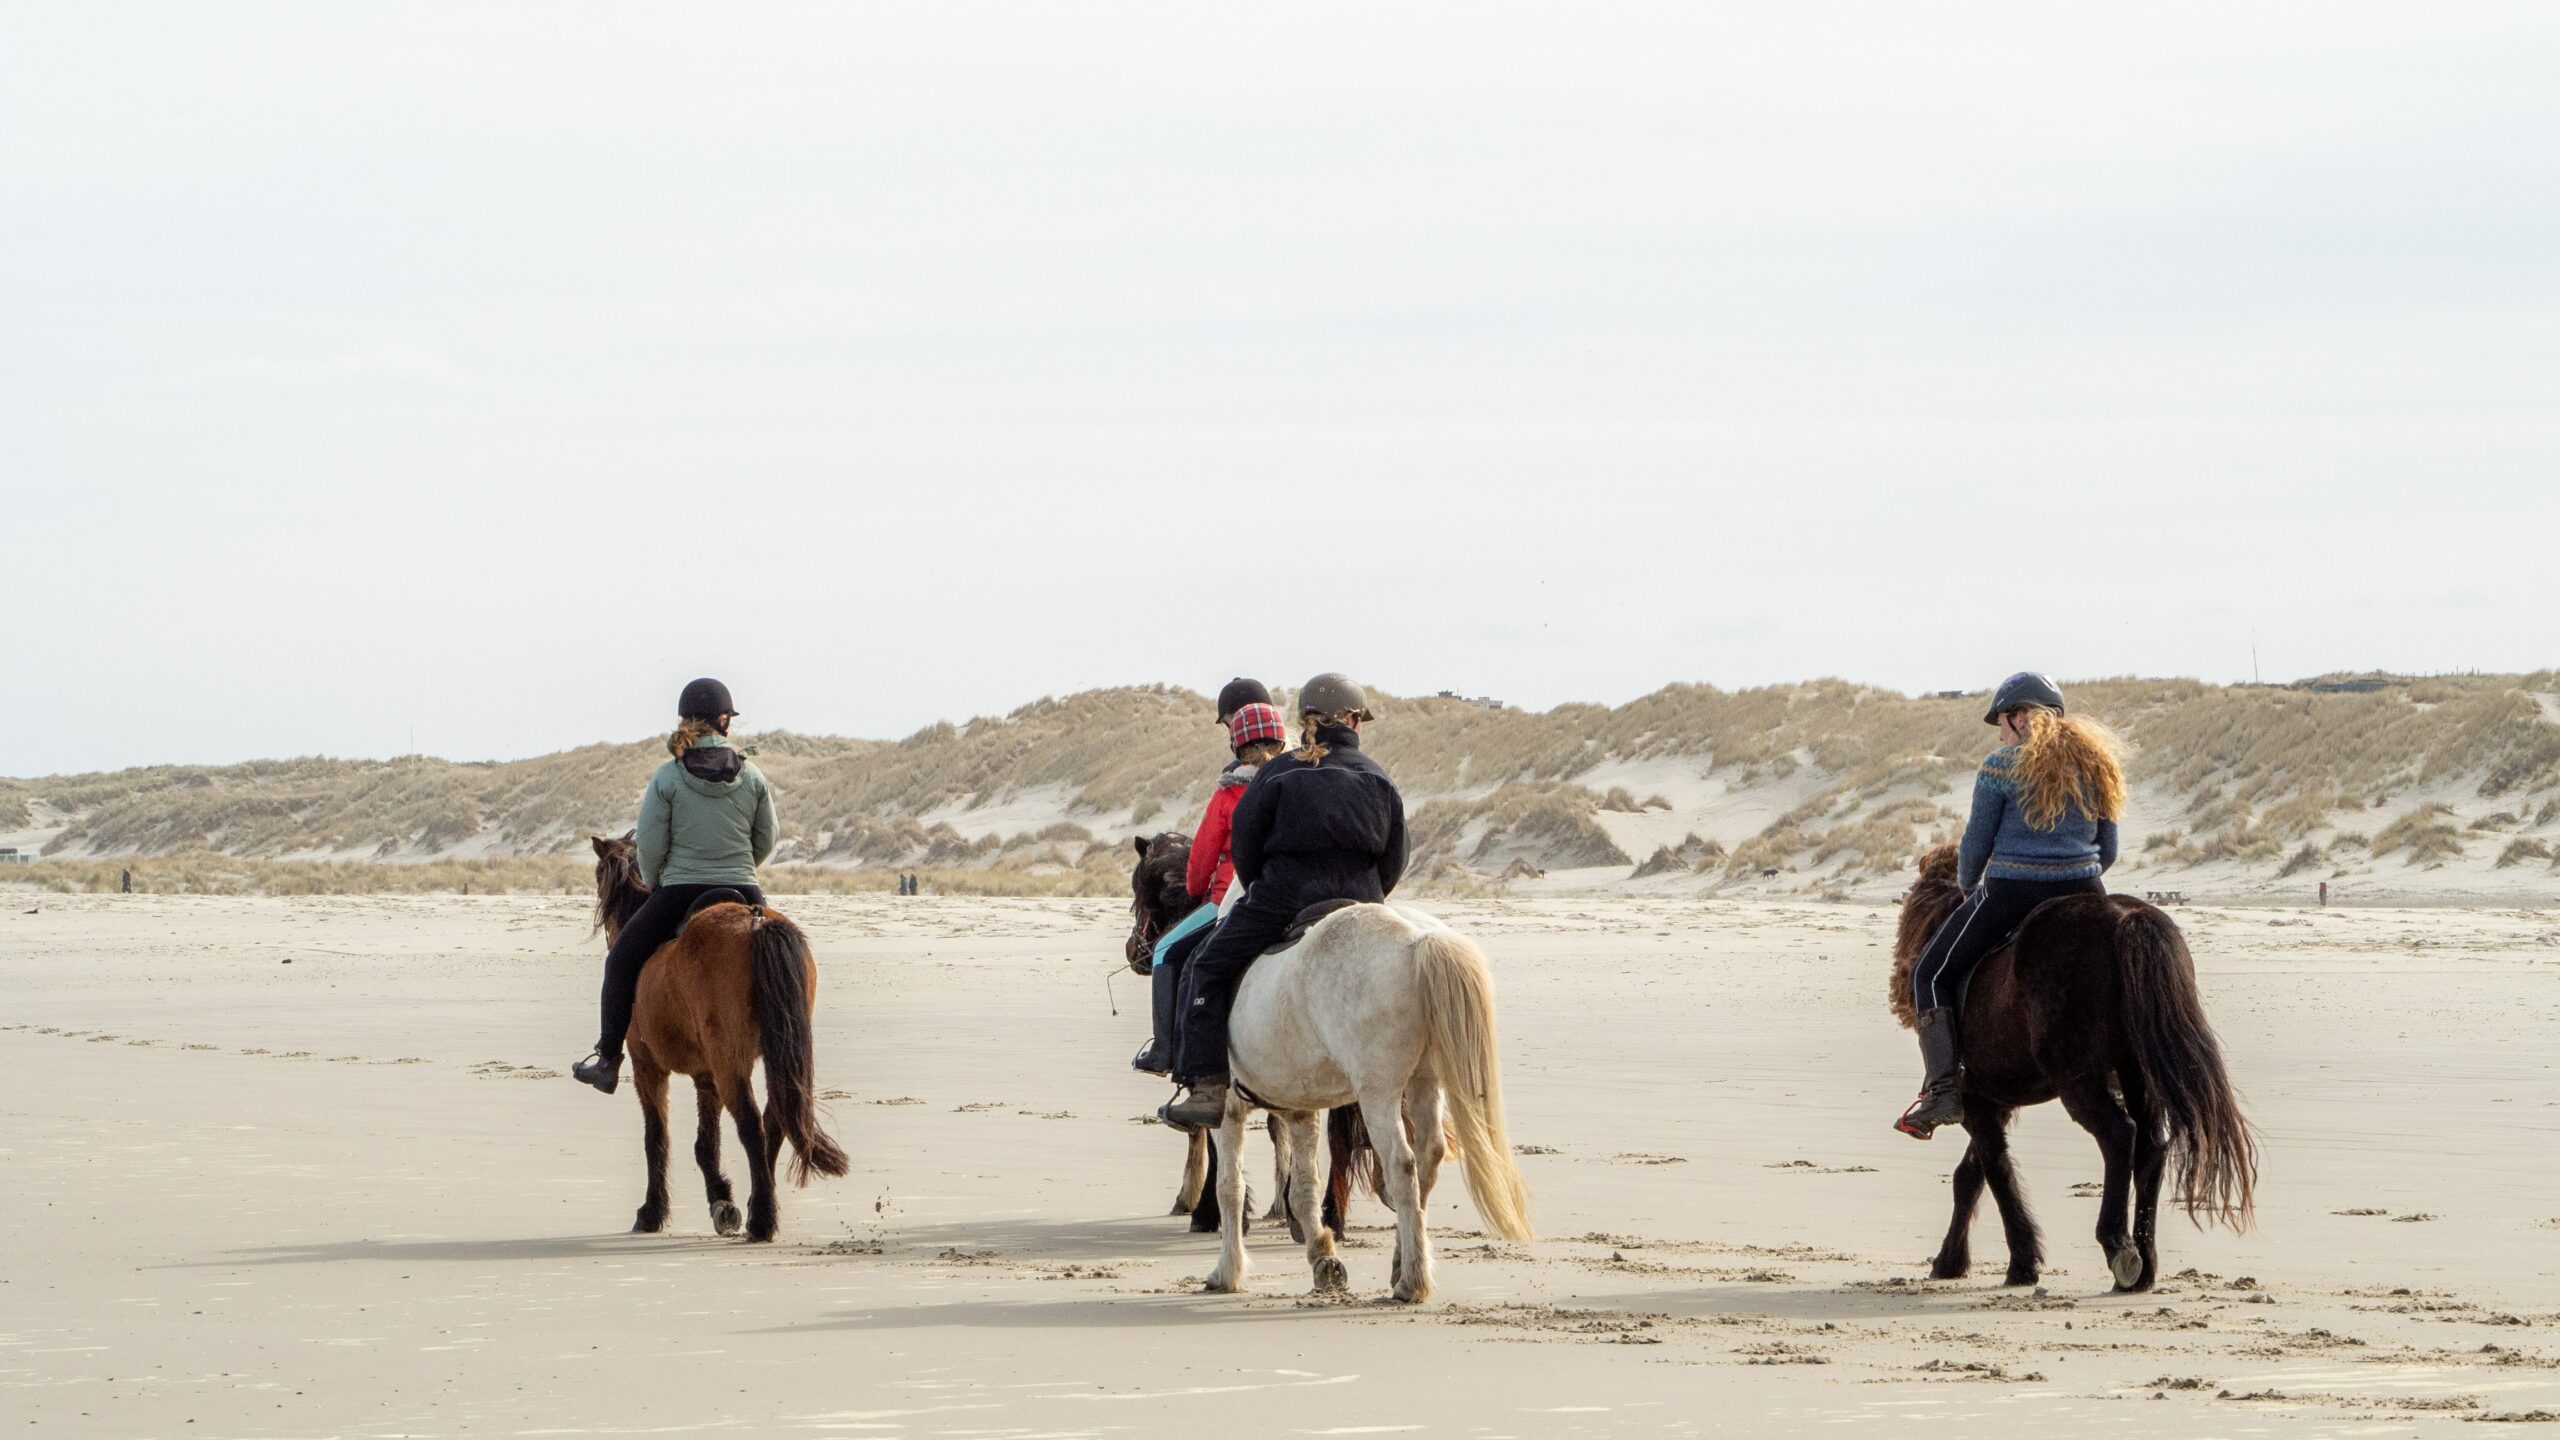 Horse riding beach